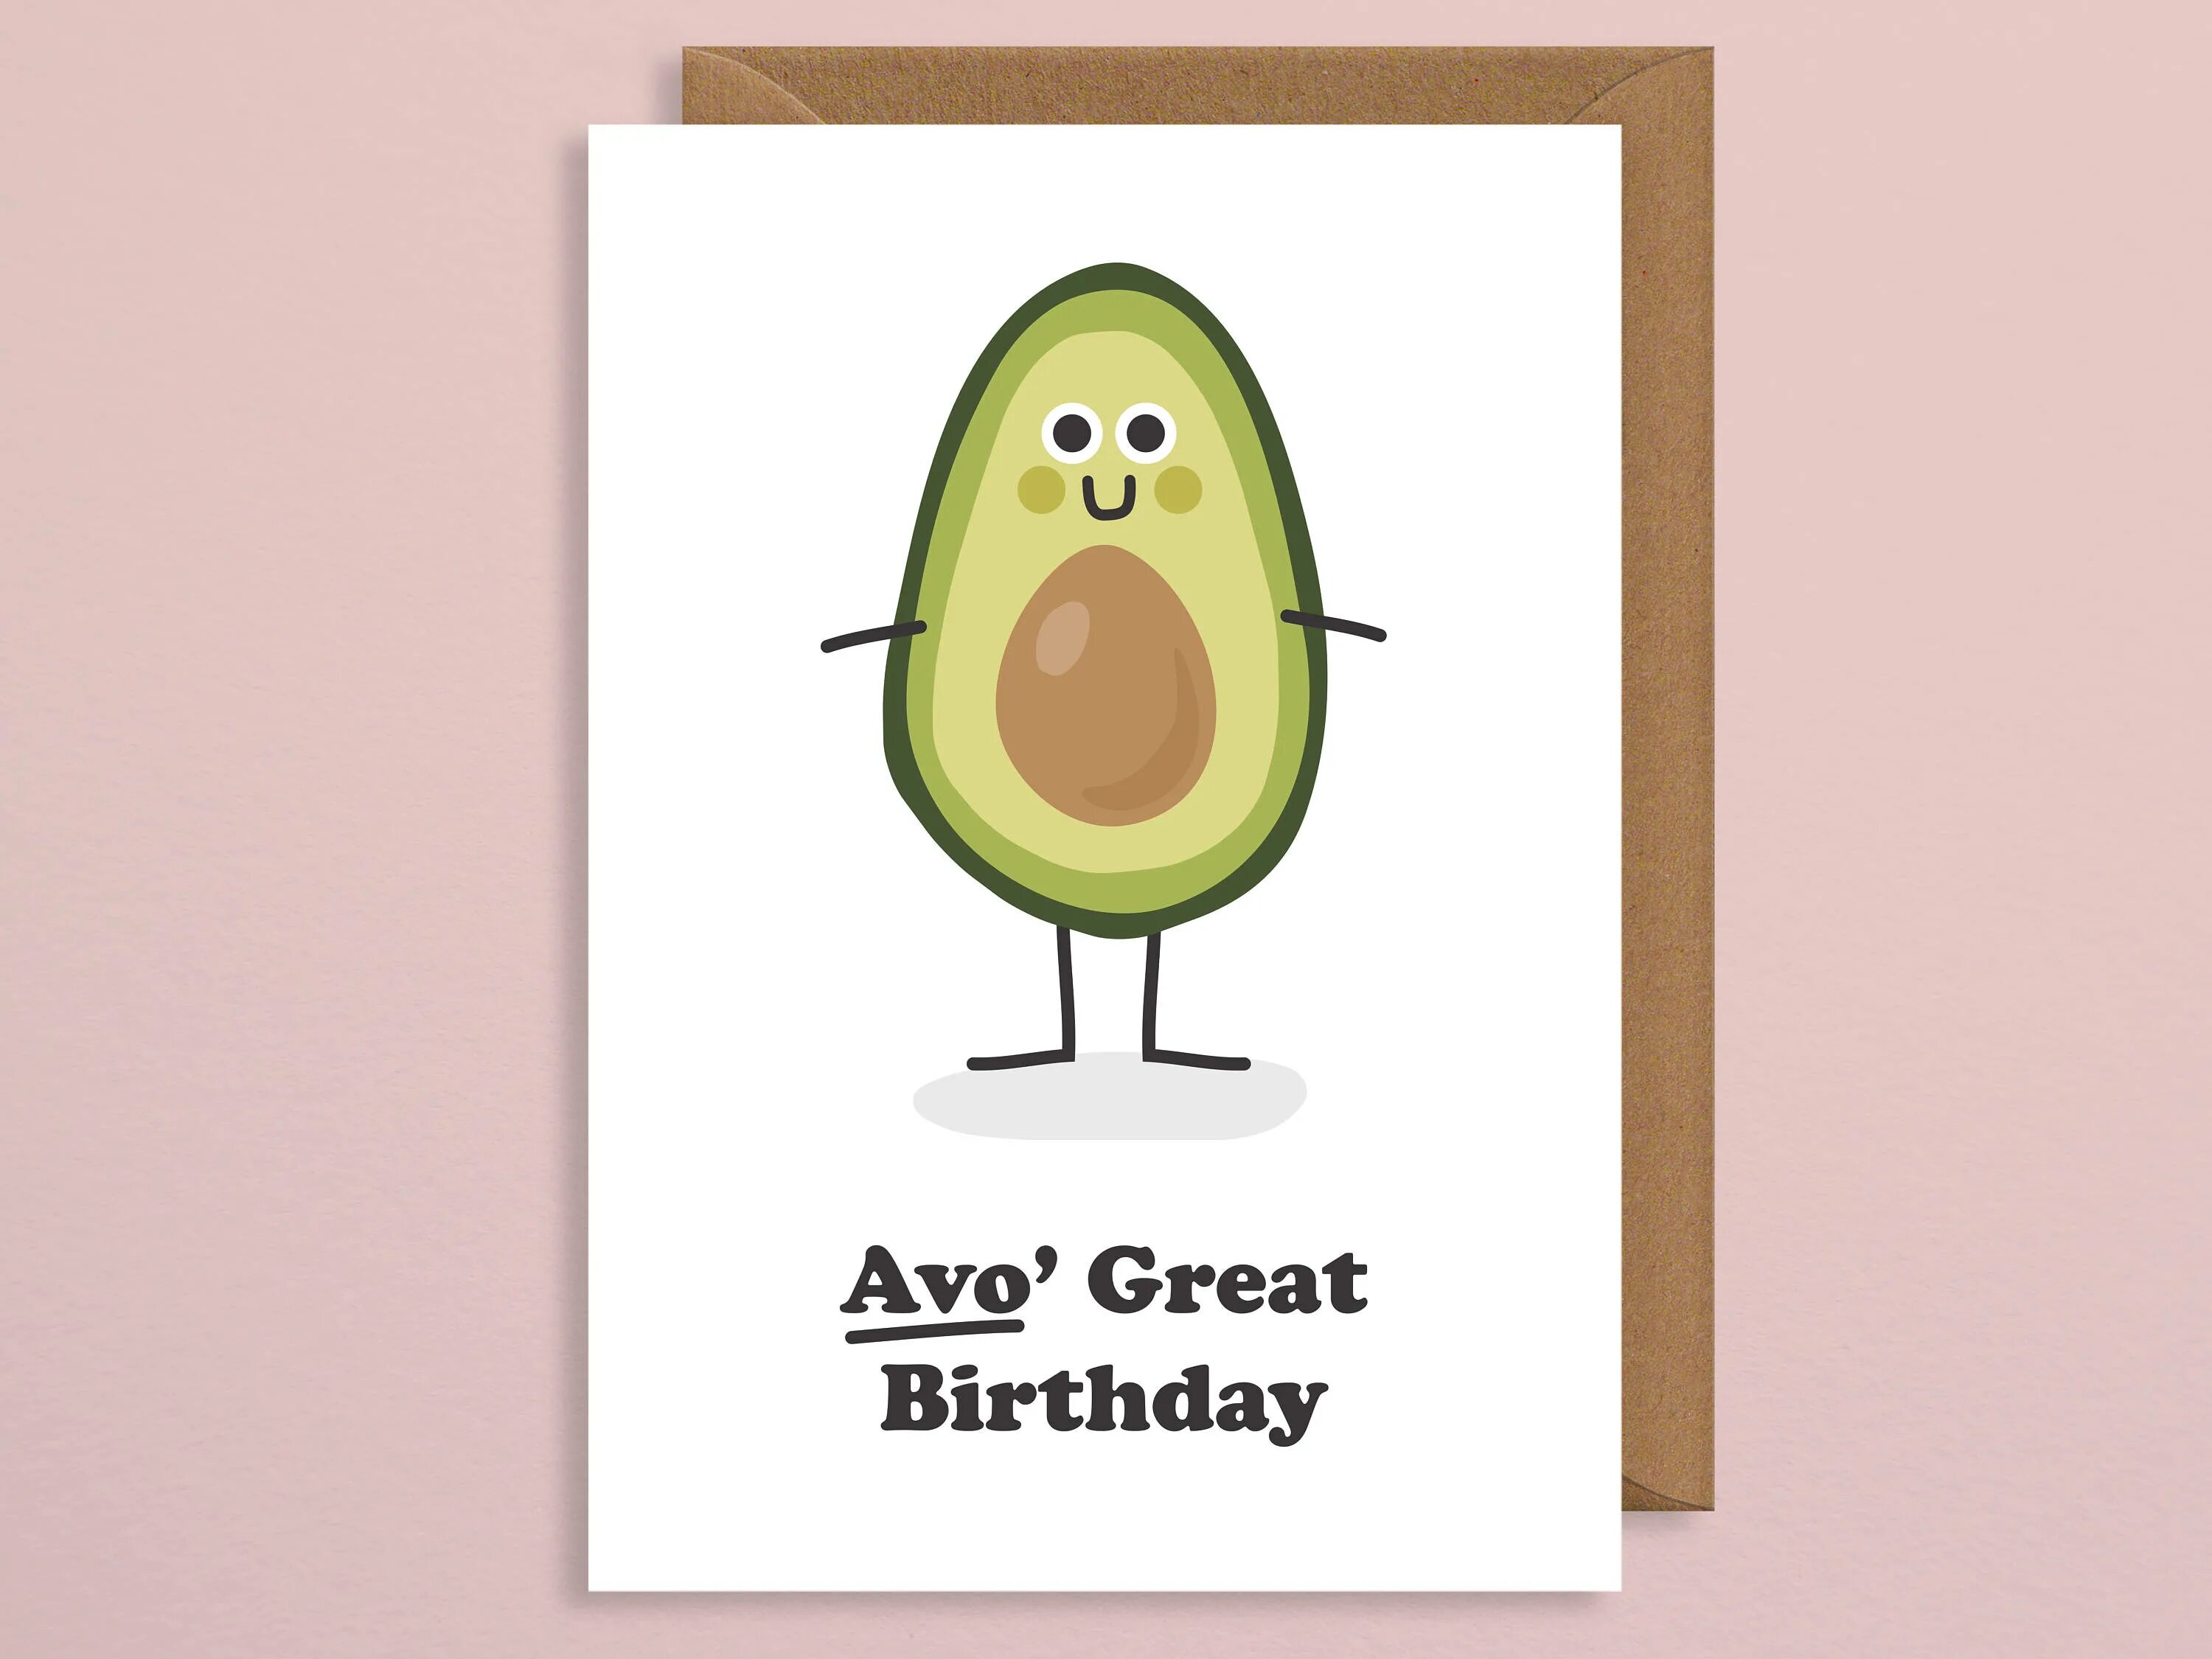 I a great birthday. Авокадо с днем рождения. Пригласительные на день рождения авокадо. Авокадо открытка на др. Приглашение на день рождения с авокадо.